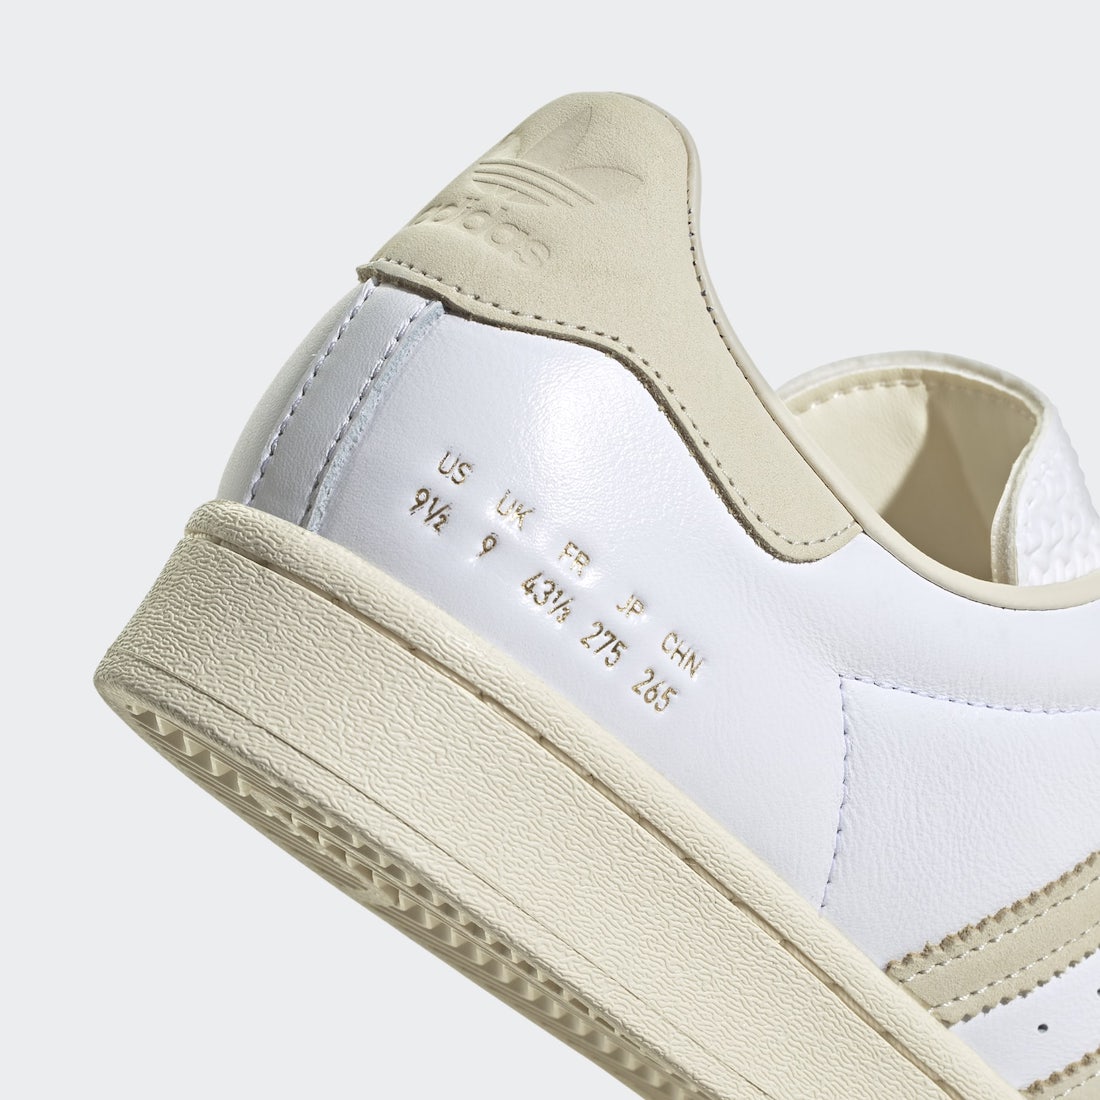 adidas Superstar White Cream H05361 Release Date